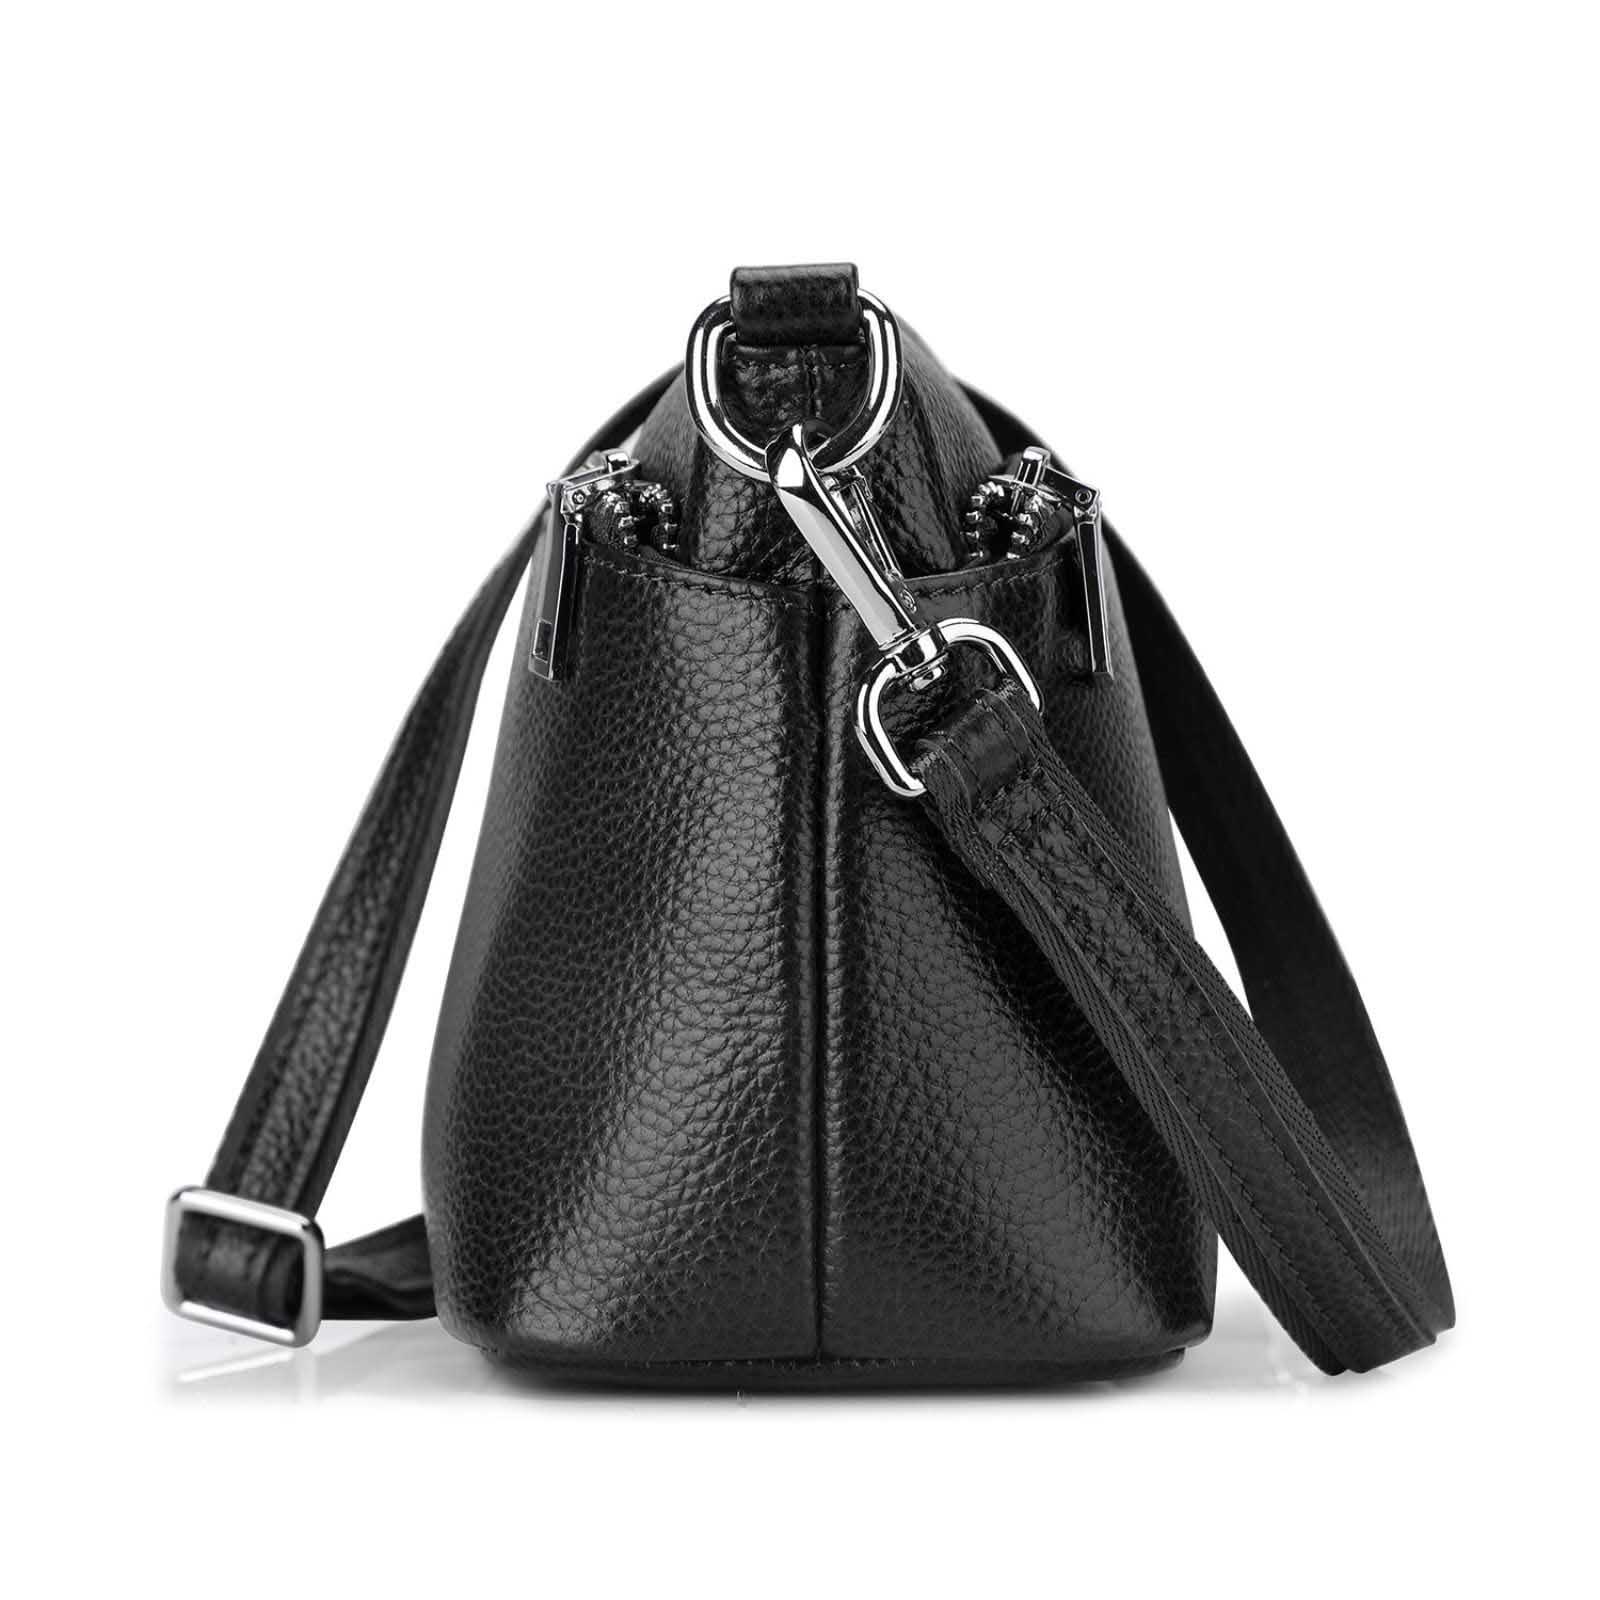 Grain leather Handbag